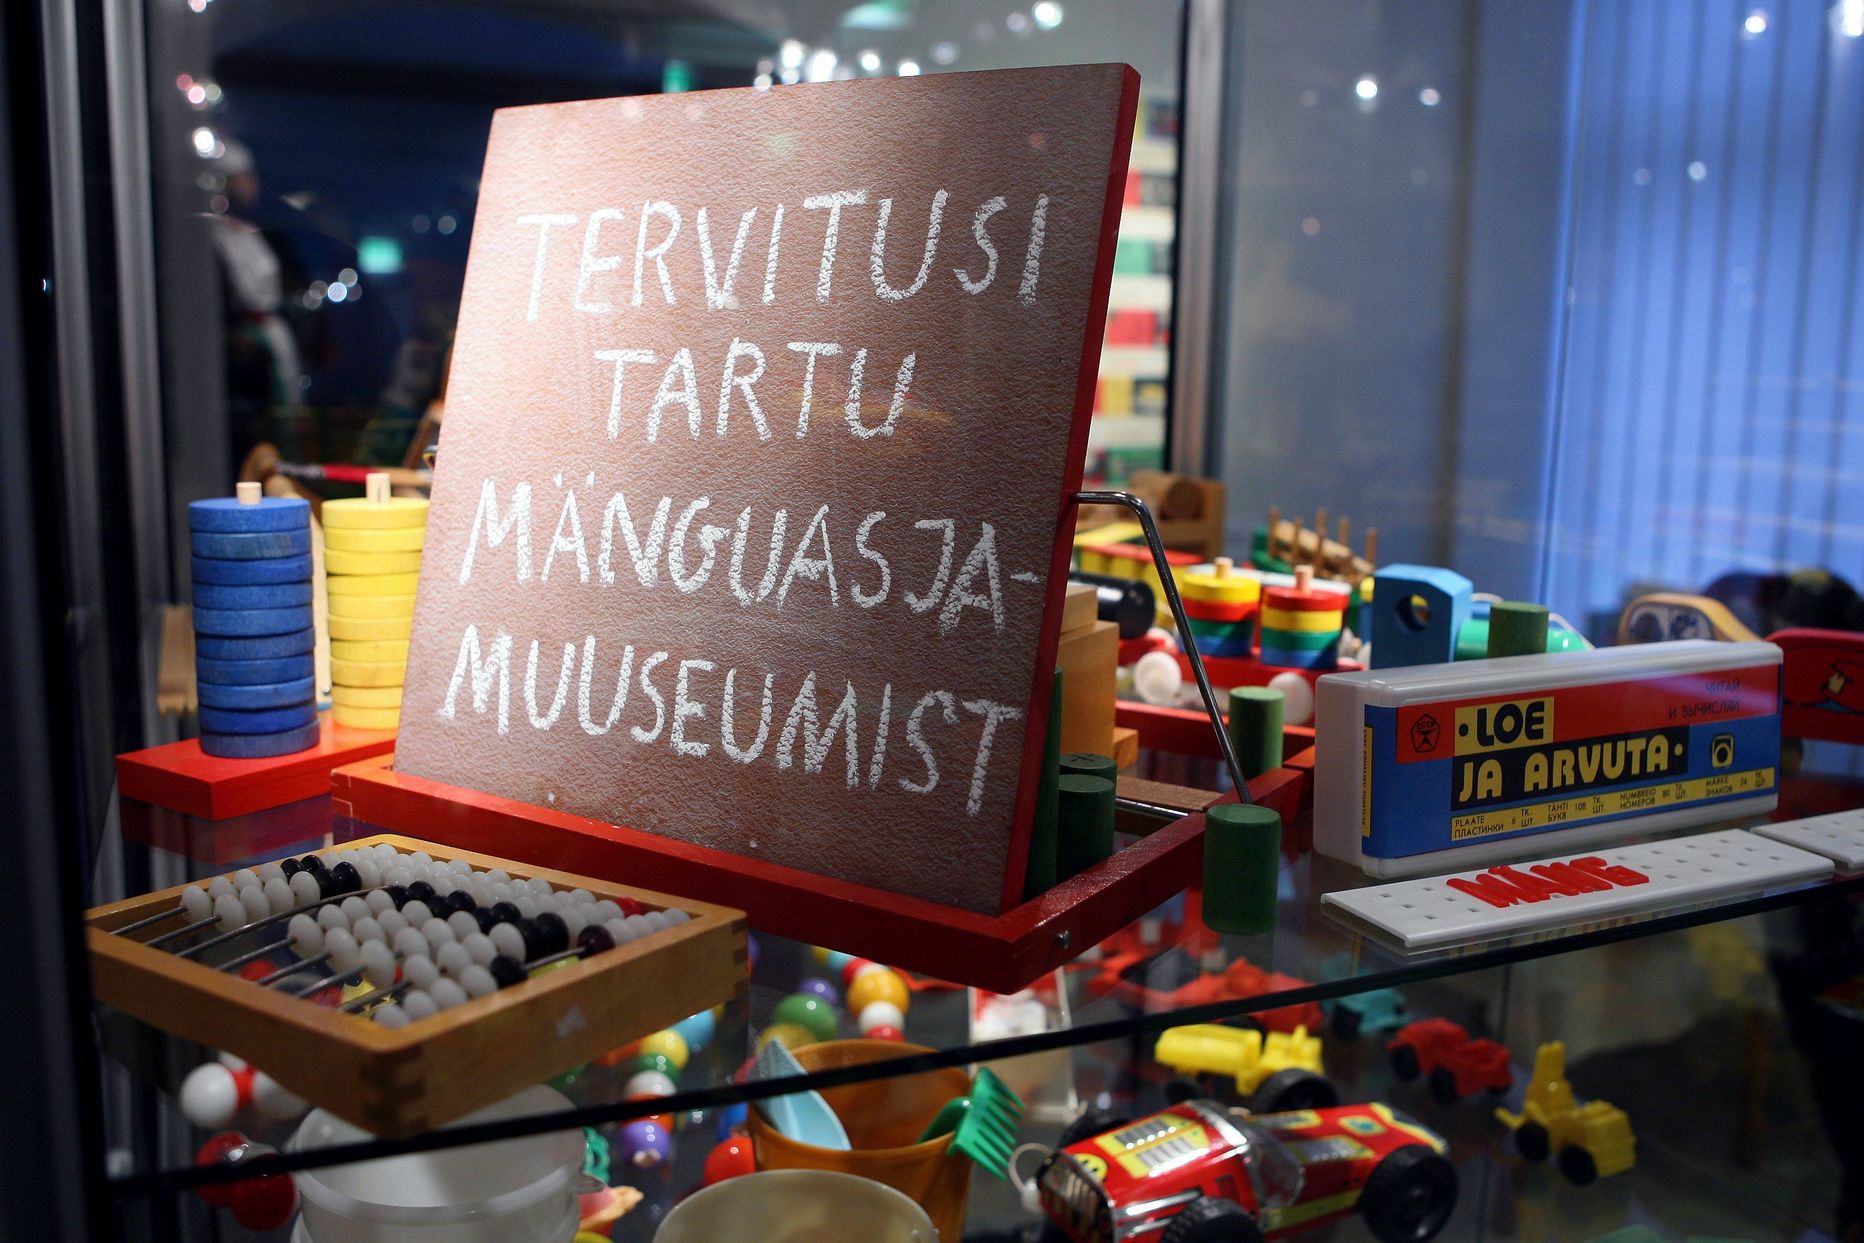 Näitusel välja pandud eksponaadid pärinevad Tartu mänguasjamuuseumi ja
Viljandi kultuuriakadeemia rahvusliku tekstiili õppetooli kogudest ning erakogudest.